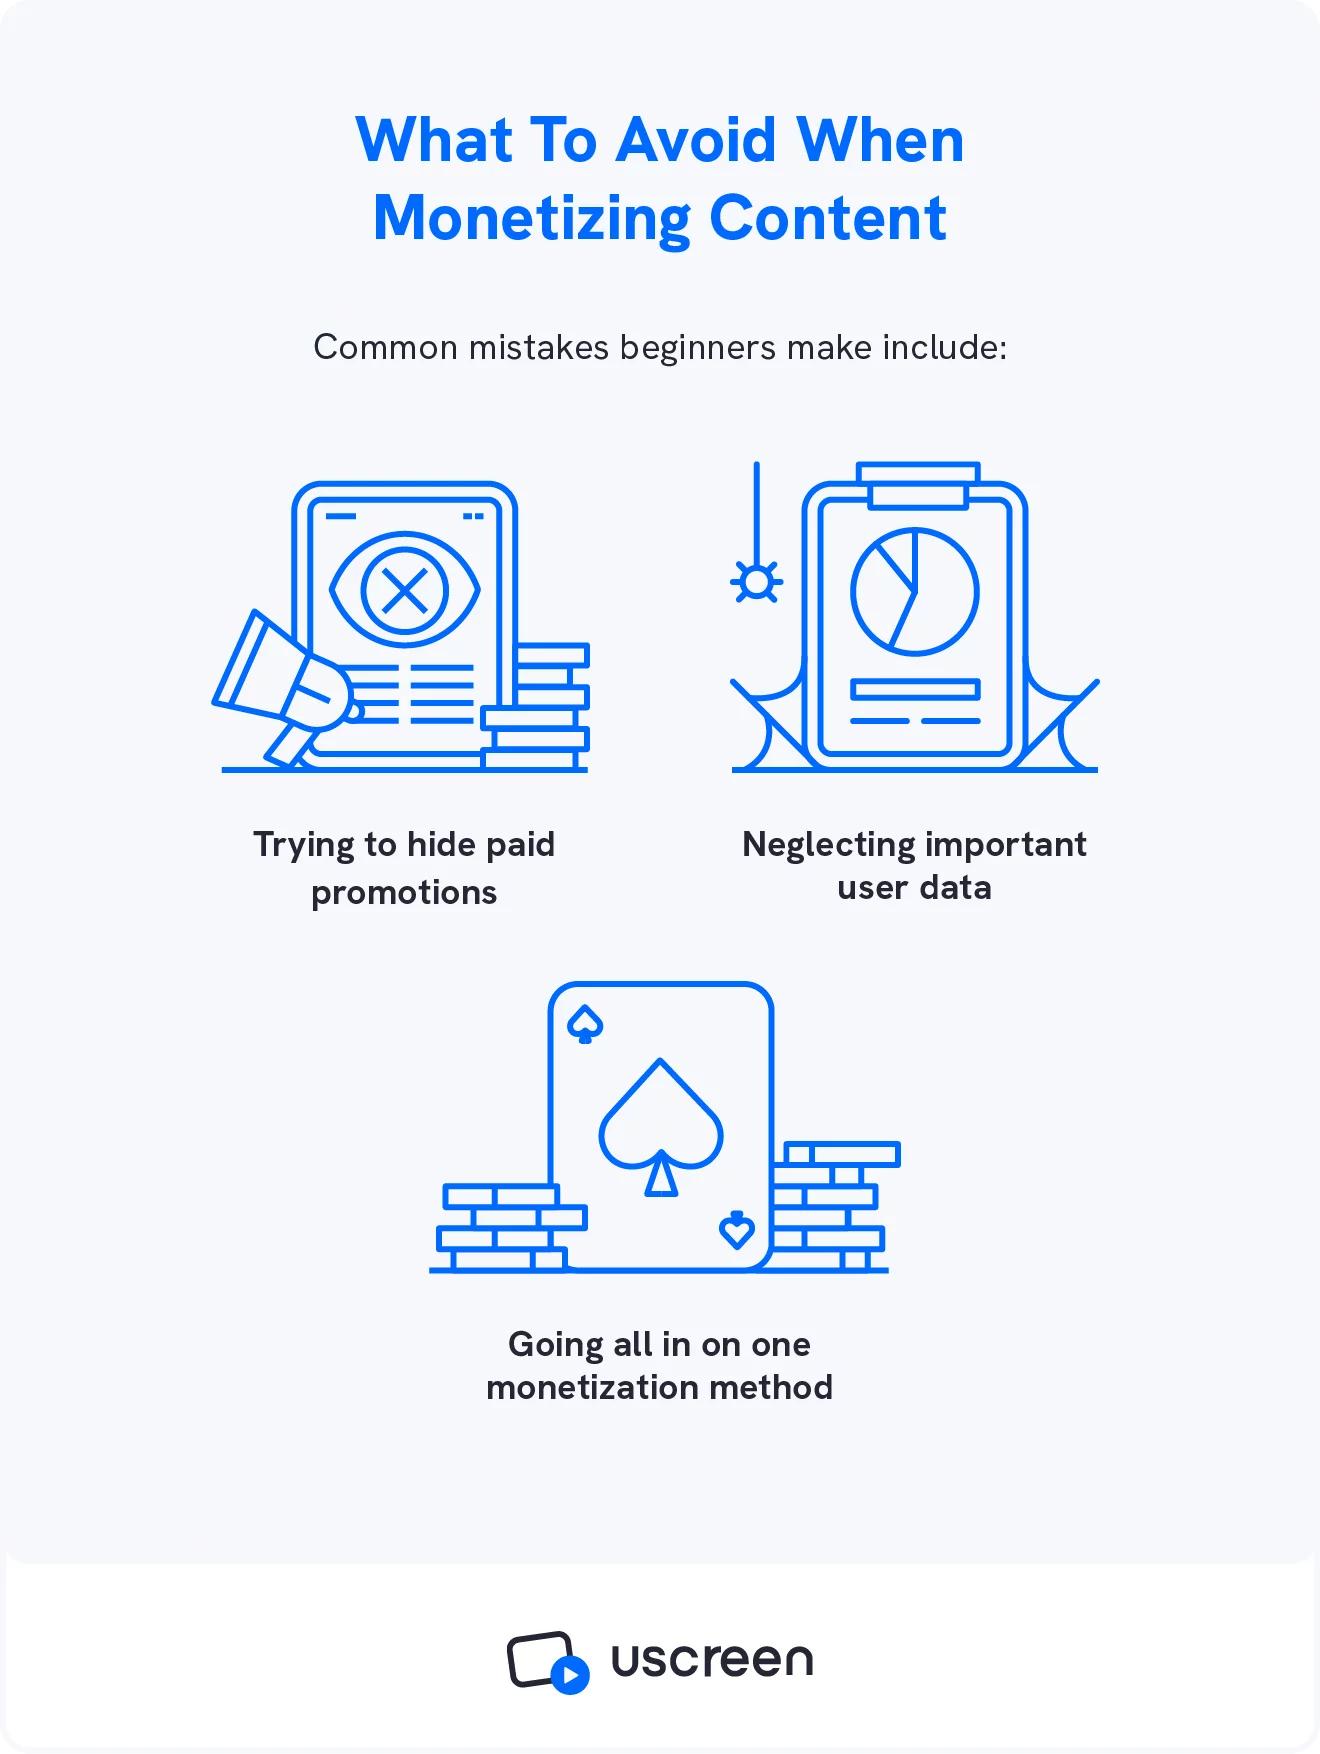 Uma imagem exibe os três principais erros de monetização de conteúdo que os criadores de vídeo cometem quando começam.